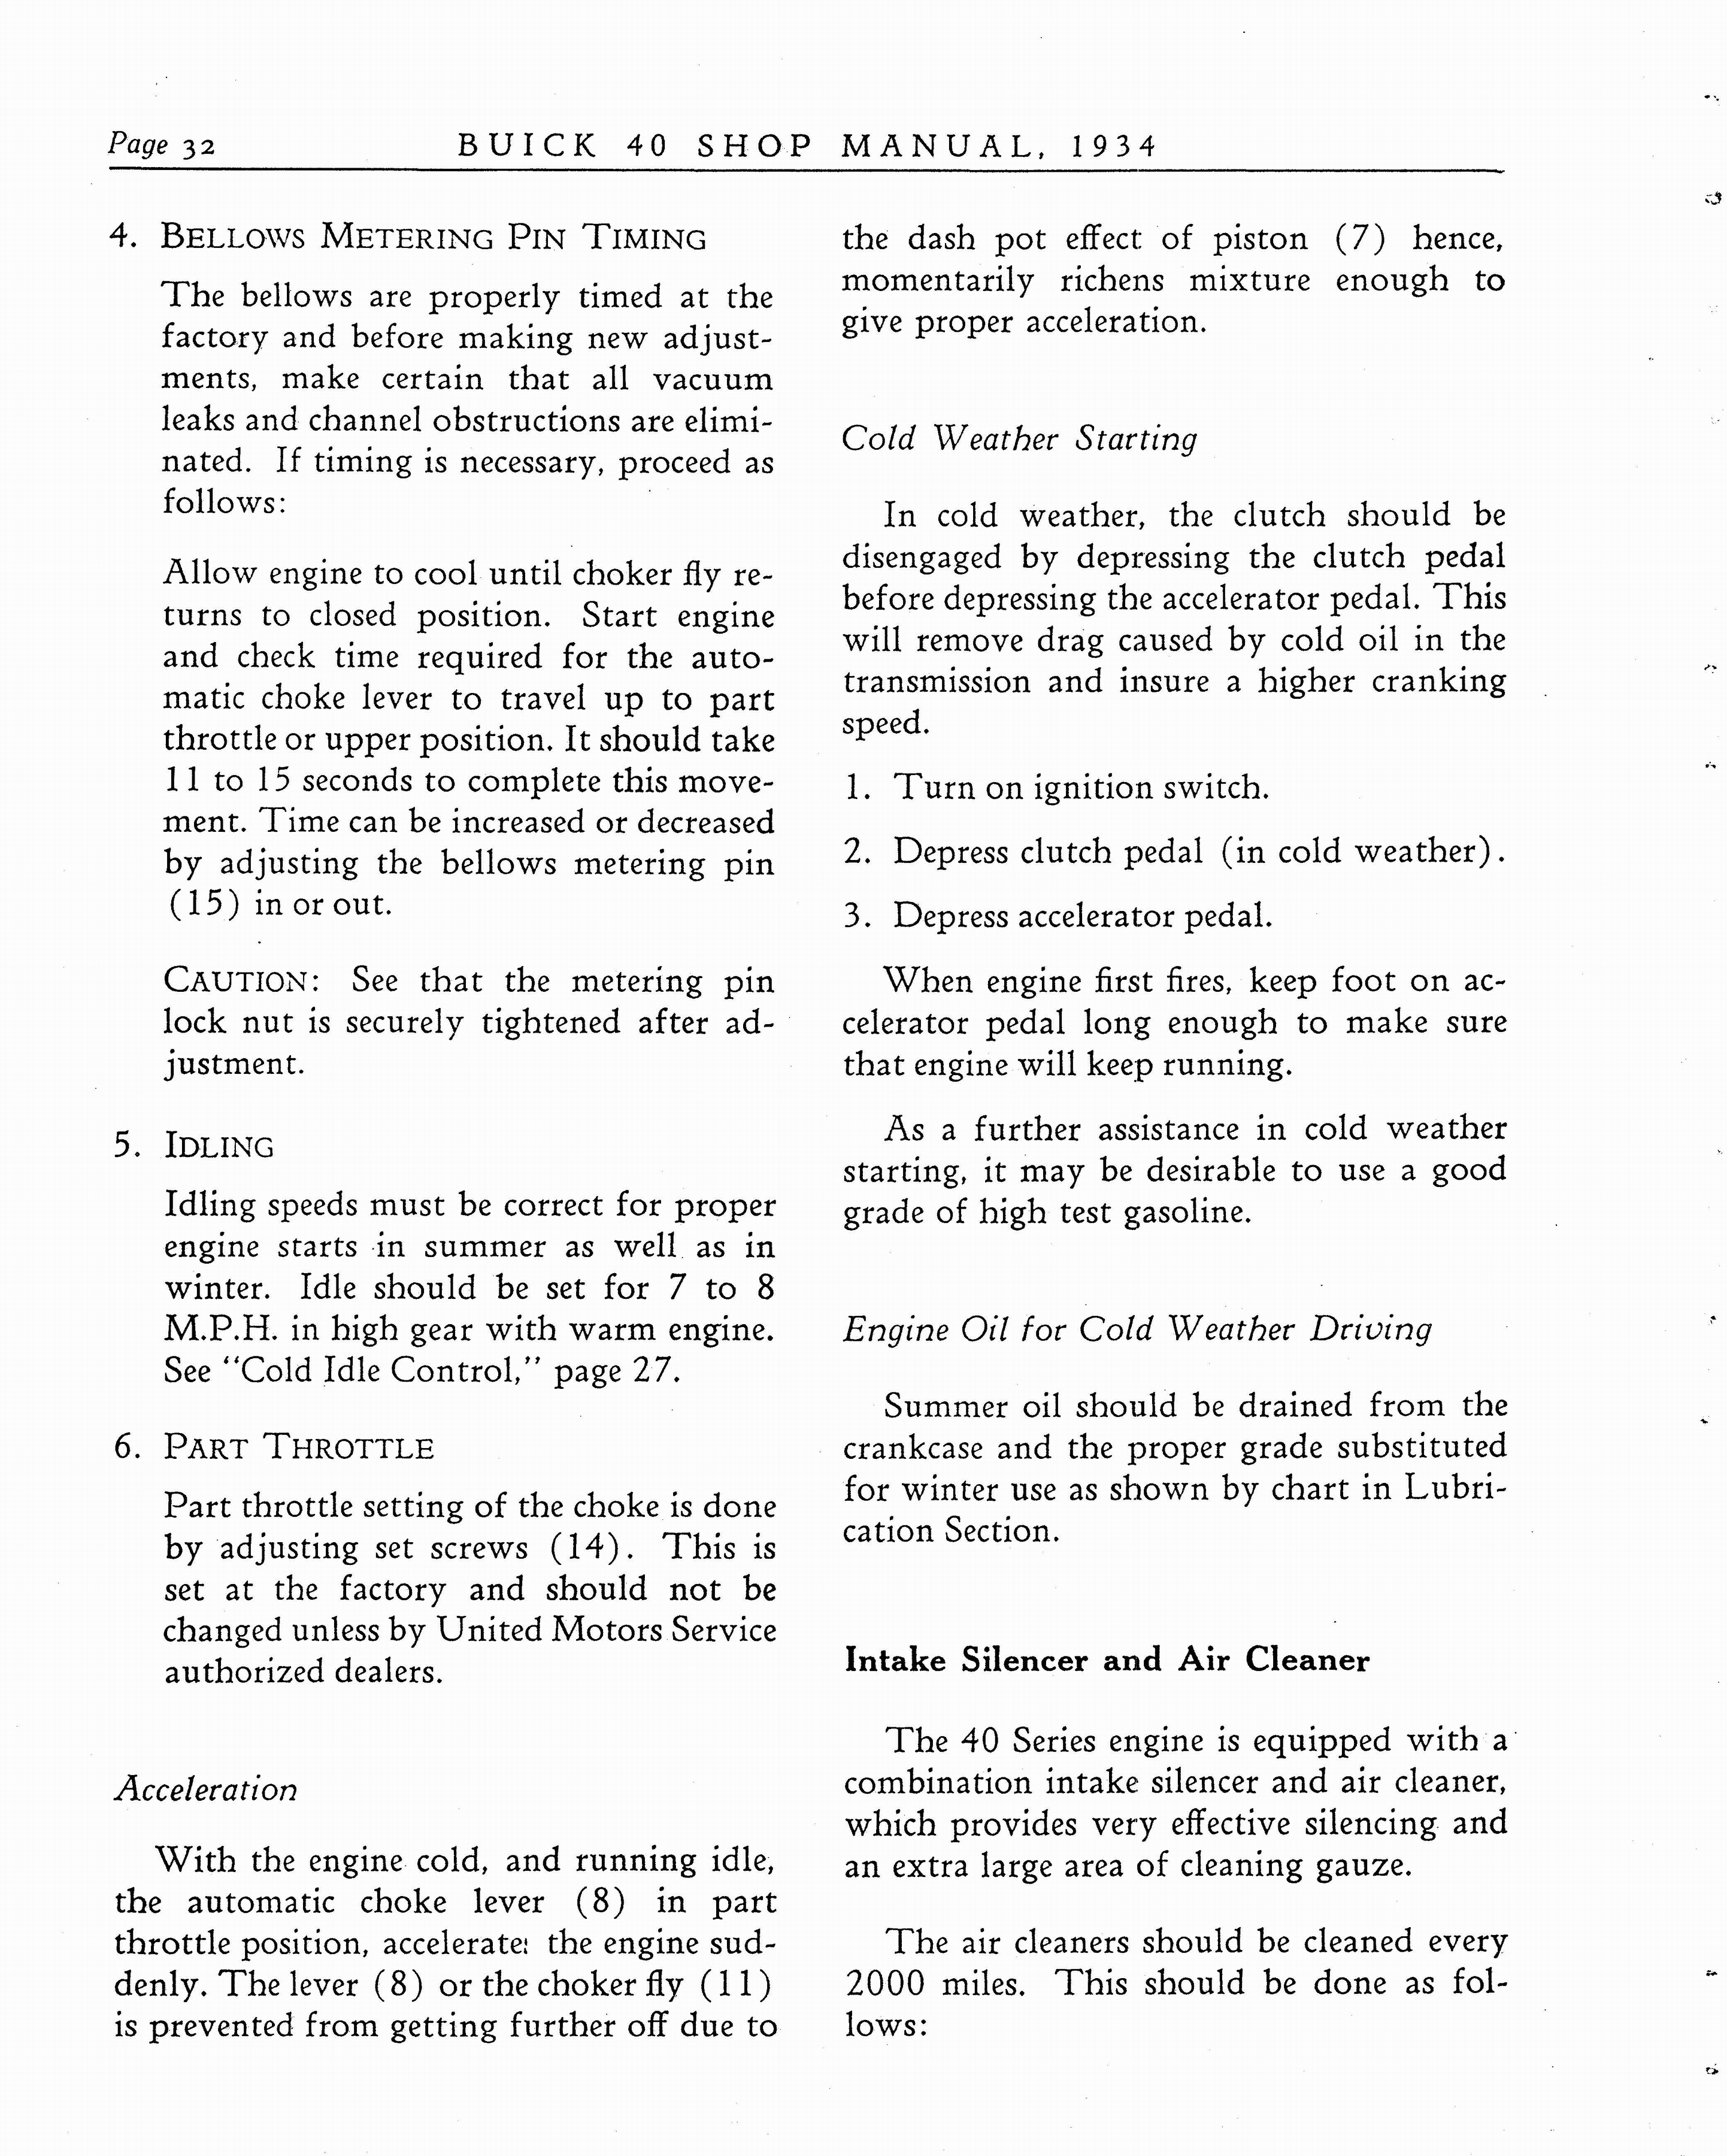 n_1934 Buick Series 40 Shop Manual_Page_033.jpg